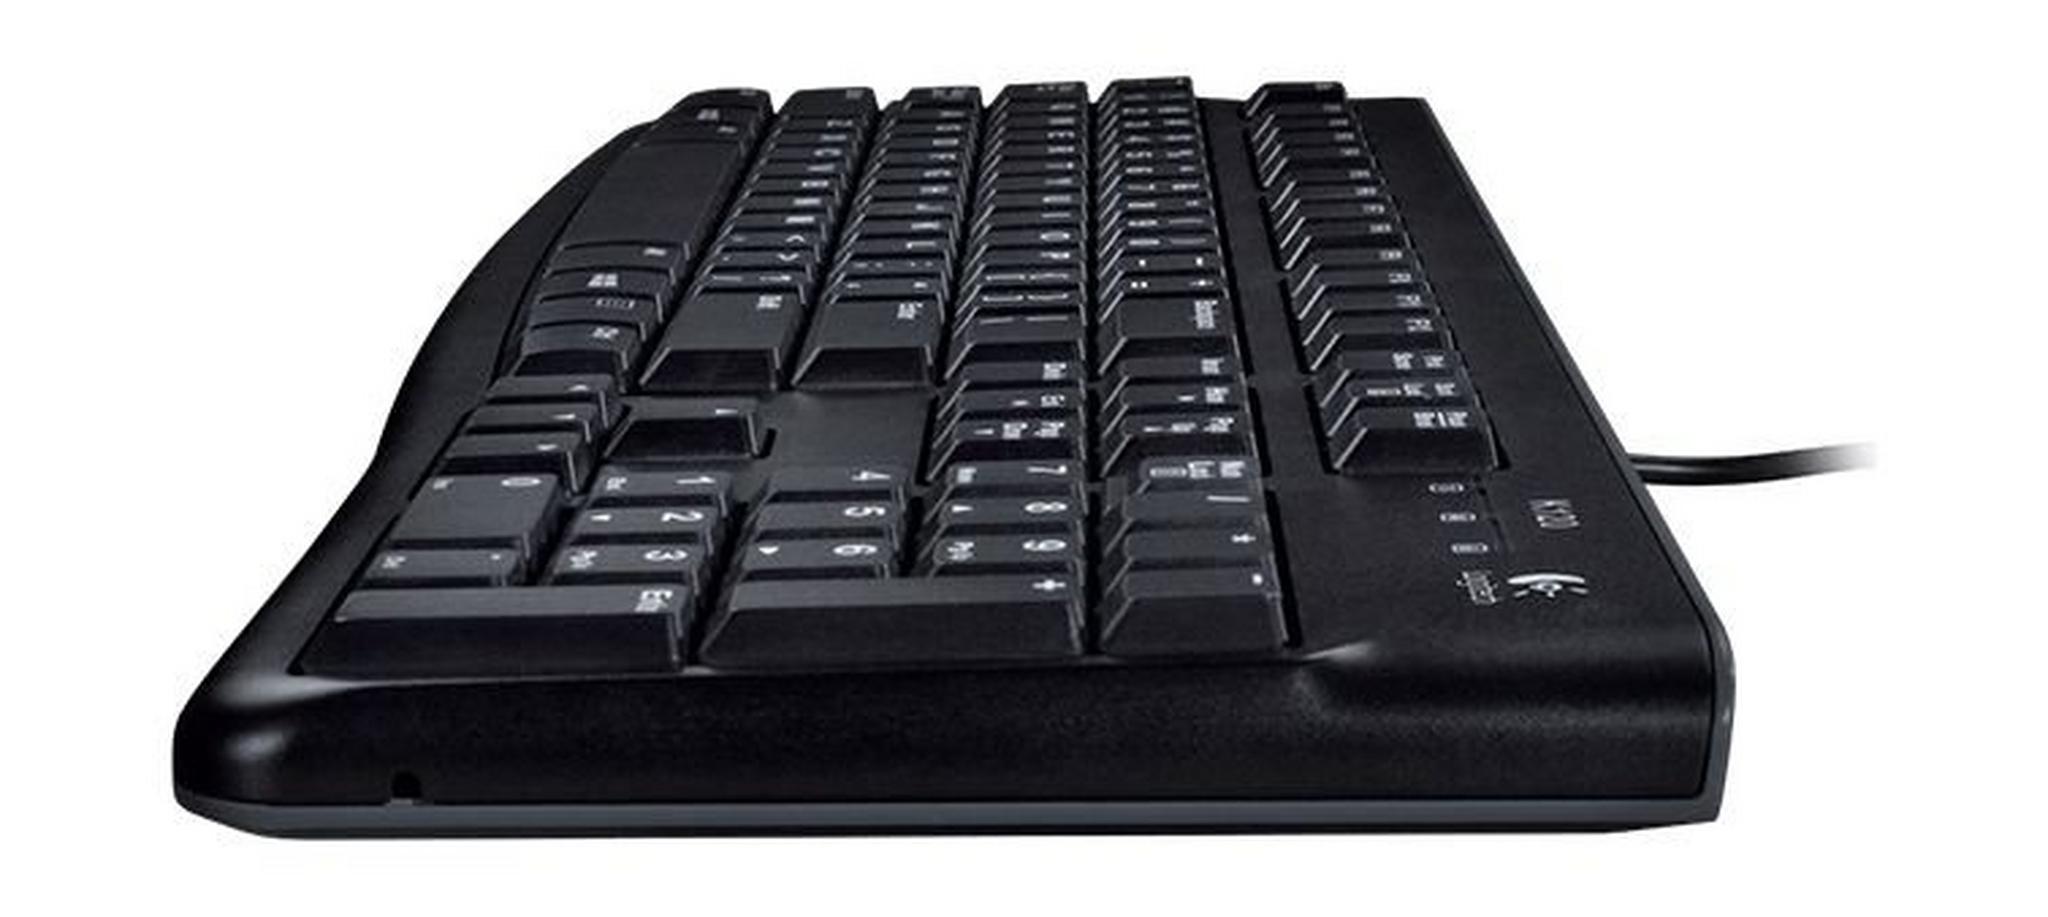 Logitech K120 Keyboard (920-002495) – Black